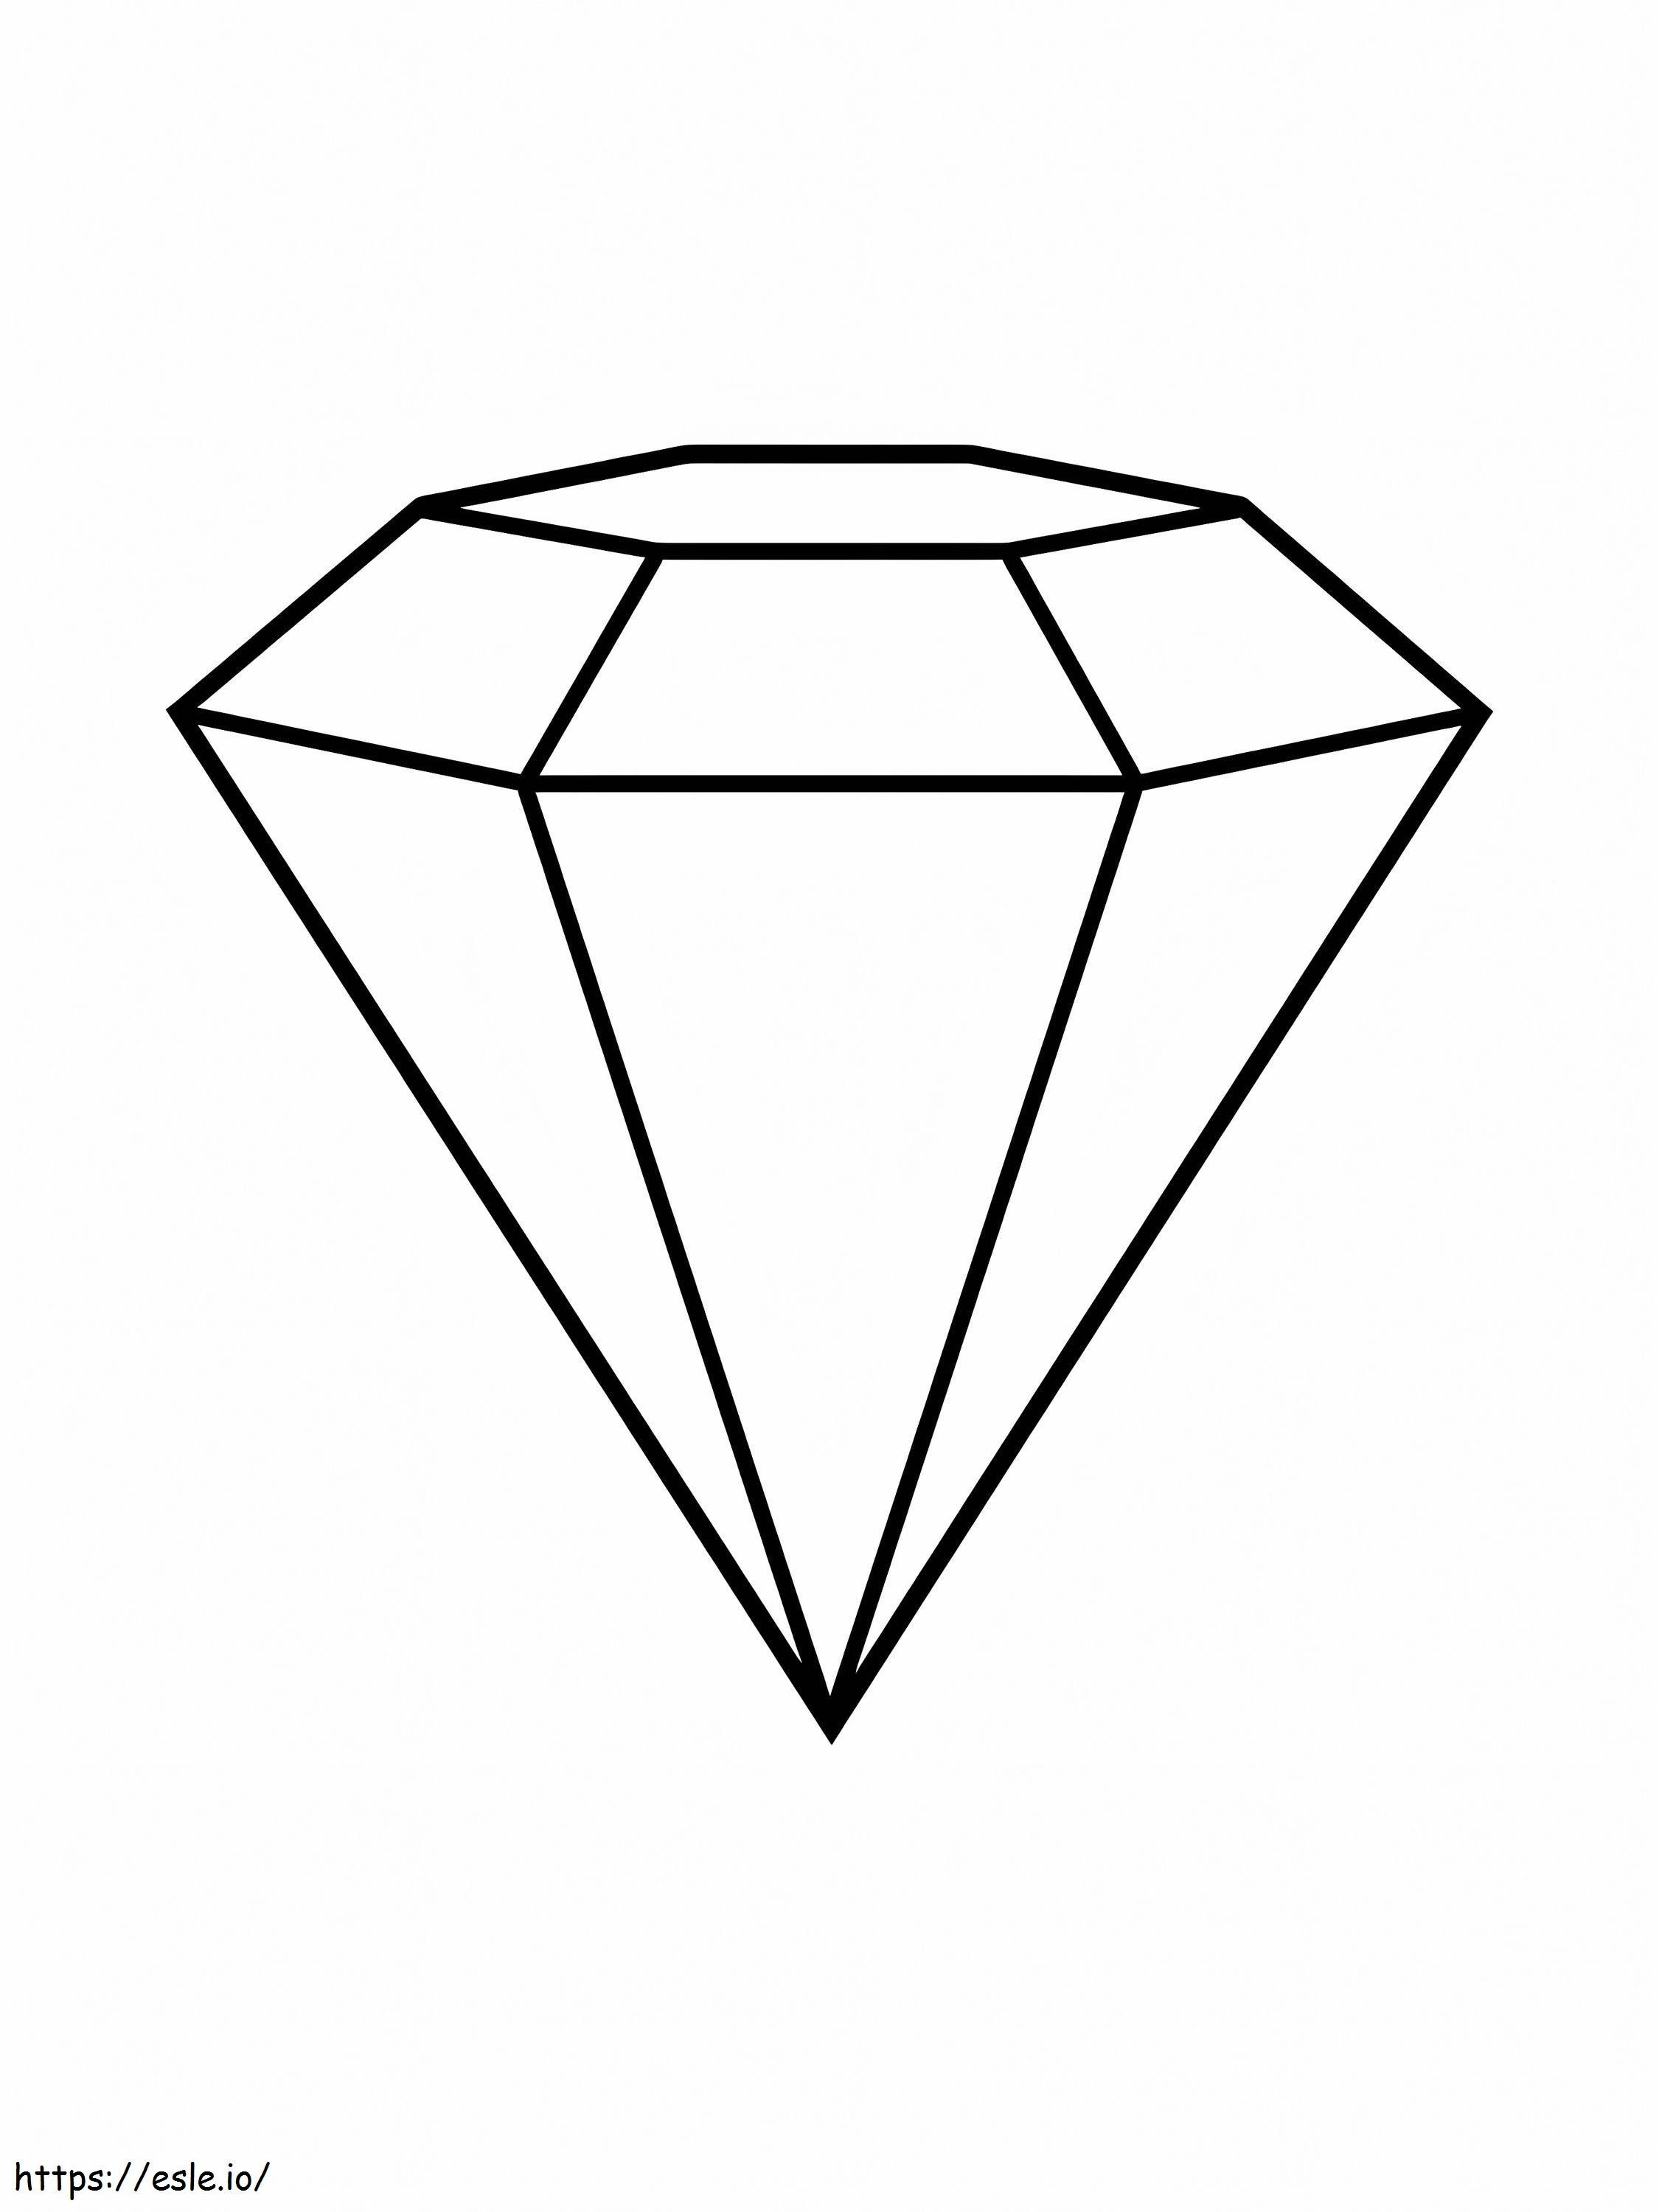 Diamante fácil para colorear